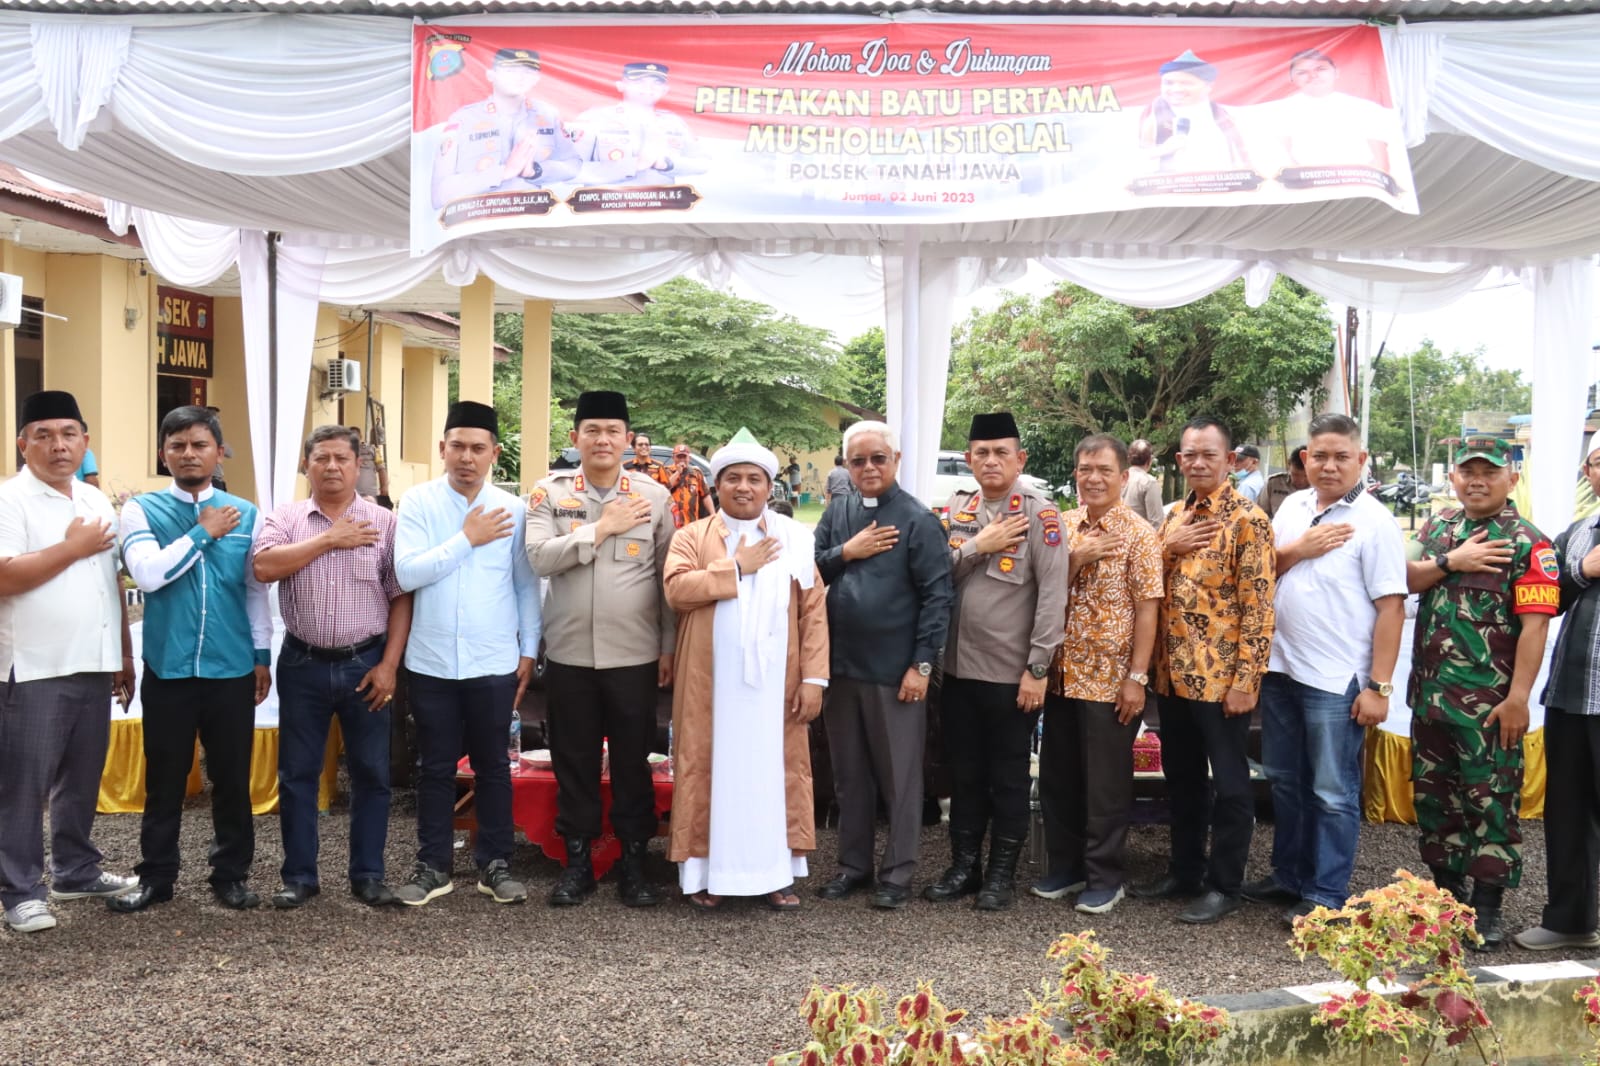 Usai melakukan peletakan batu pertama pembangunan Mushola Istiqlal Polsek Tanahjawa, Kapolres Simalungun dan TGB foto bersama dengan para camat, tokoh agama dan tokoh agama setempat, Jumat (2/6).(ist).